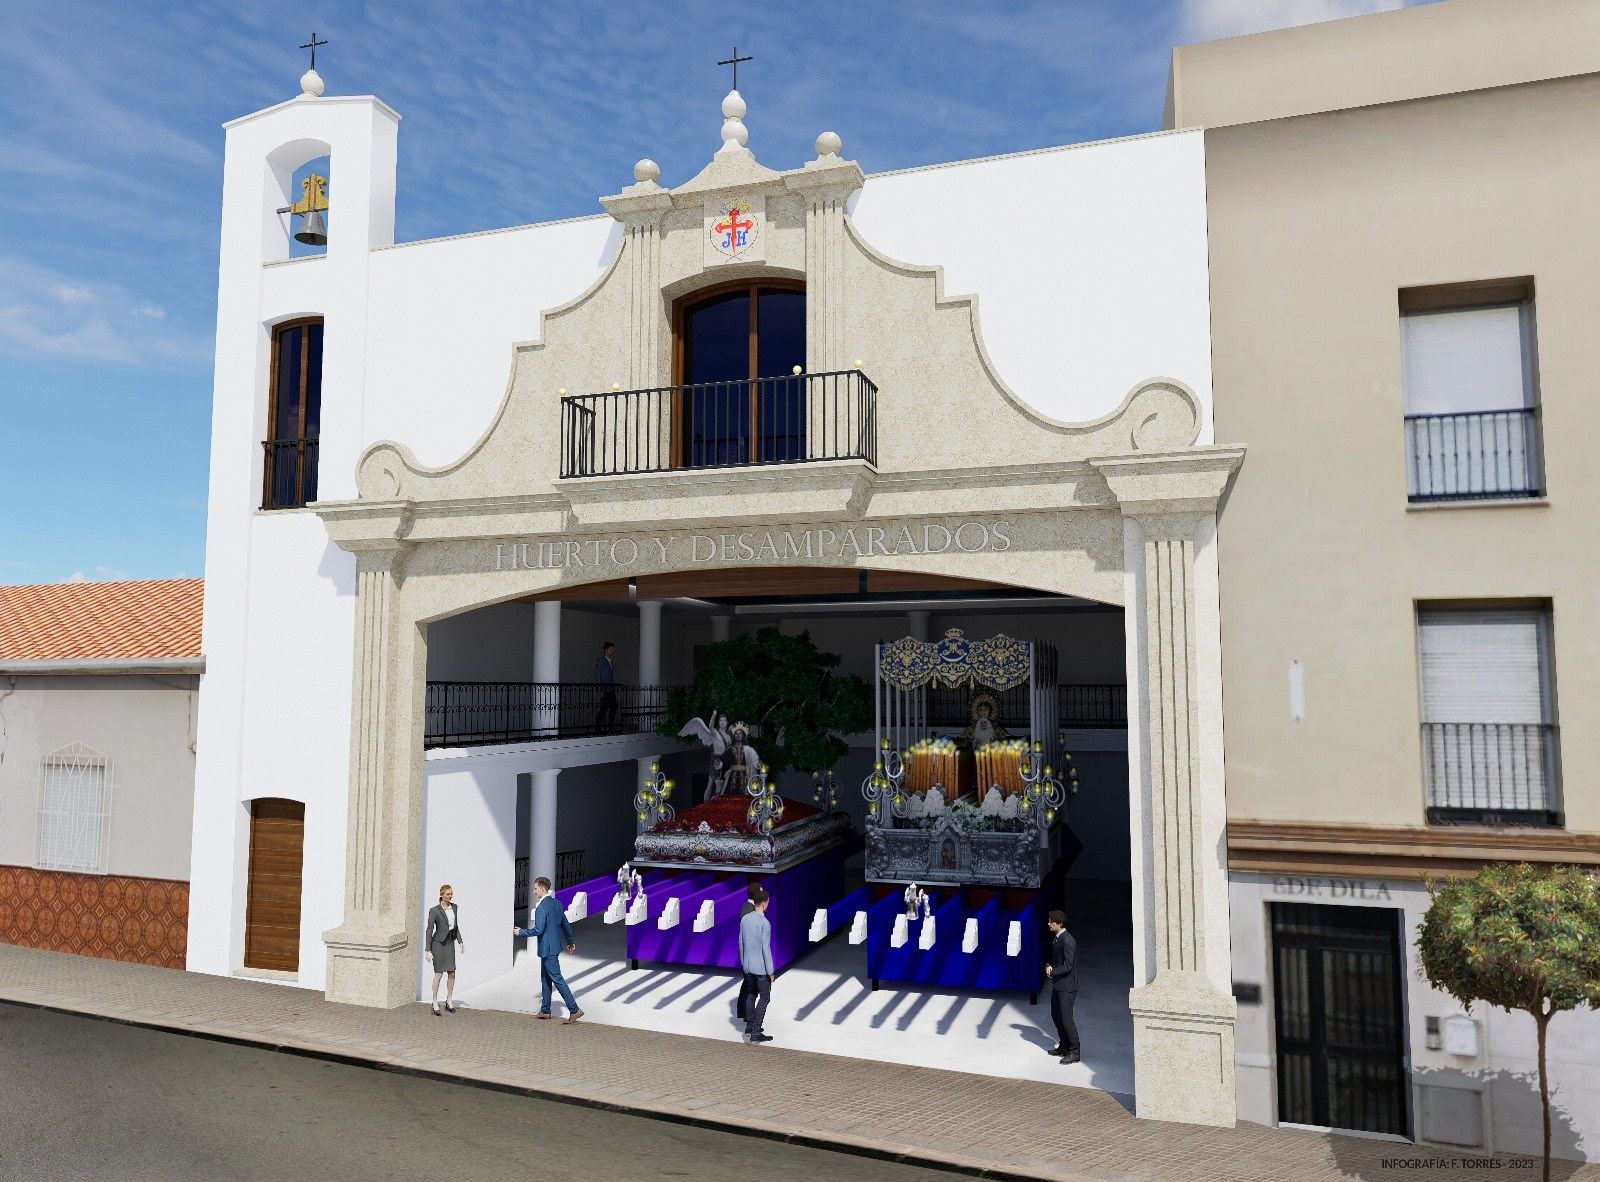 Así será la fachada de la Casa Hermandad del Huerto y Desamparados de Vélez-Málaga.